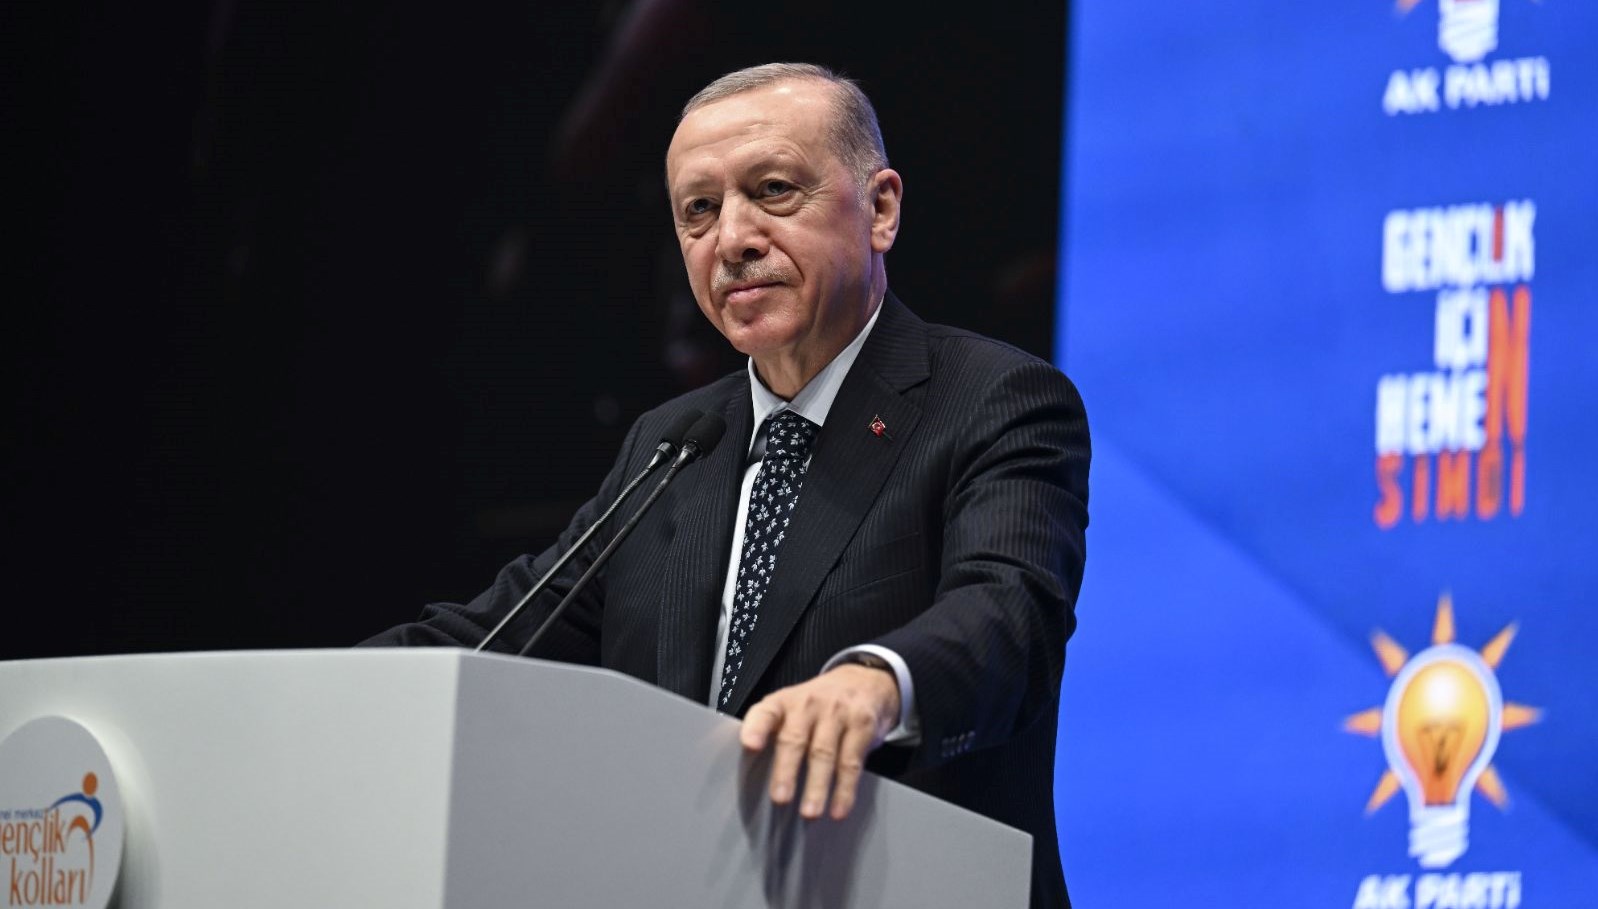 SON DAKİKA HABERİ: Cumhurbaşkanı Erdoğan: Ev sahibi olmak isteyen gençleri hayallerine kavuşturacak olan biziz